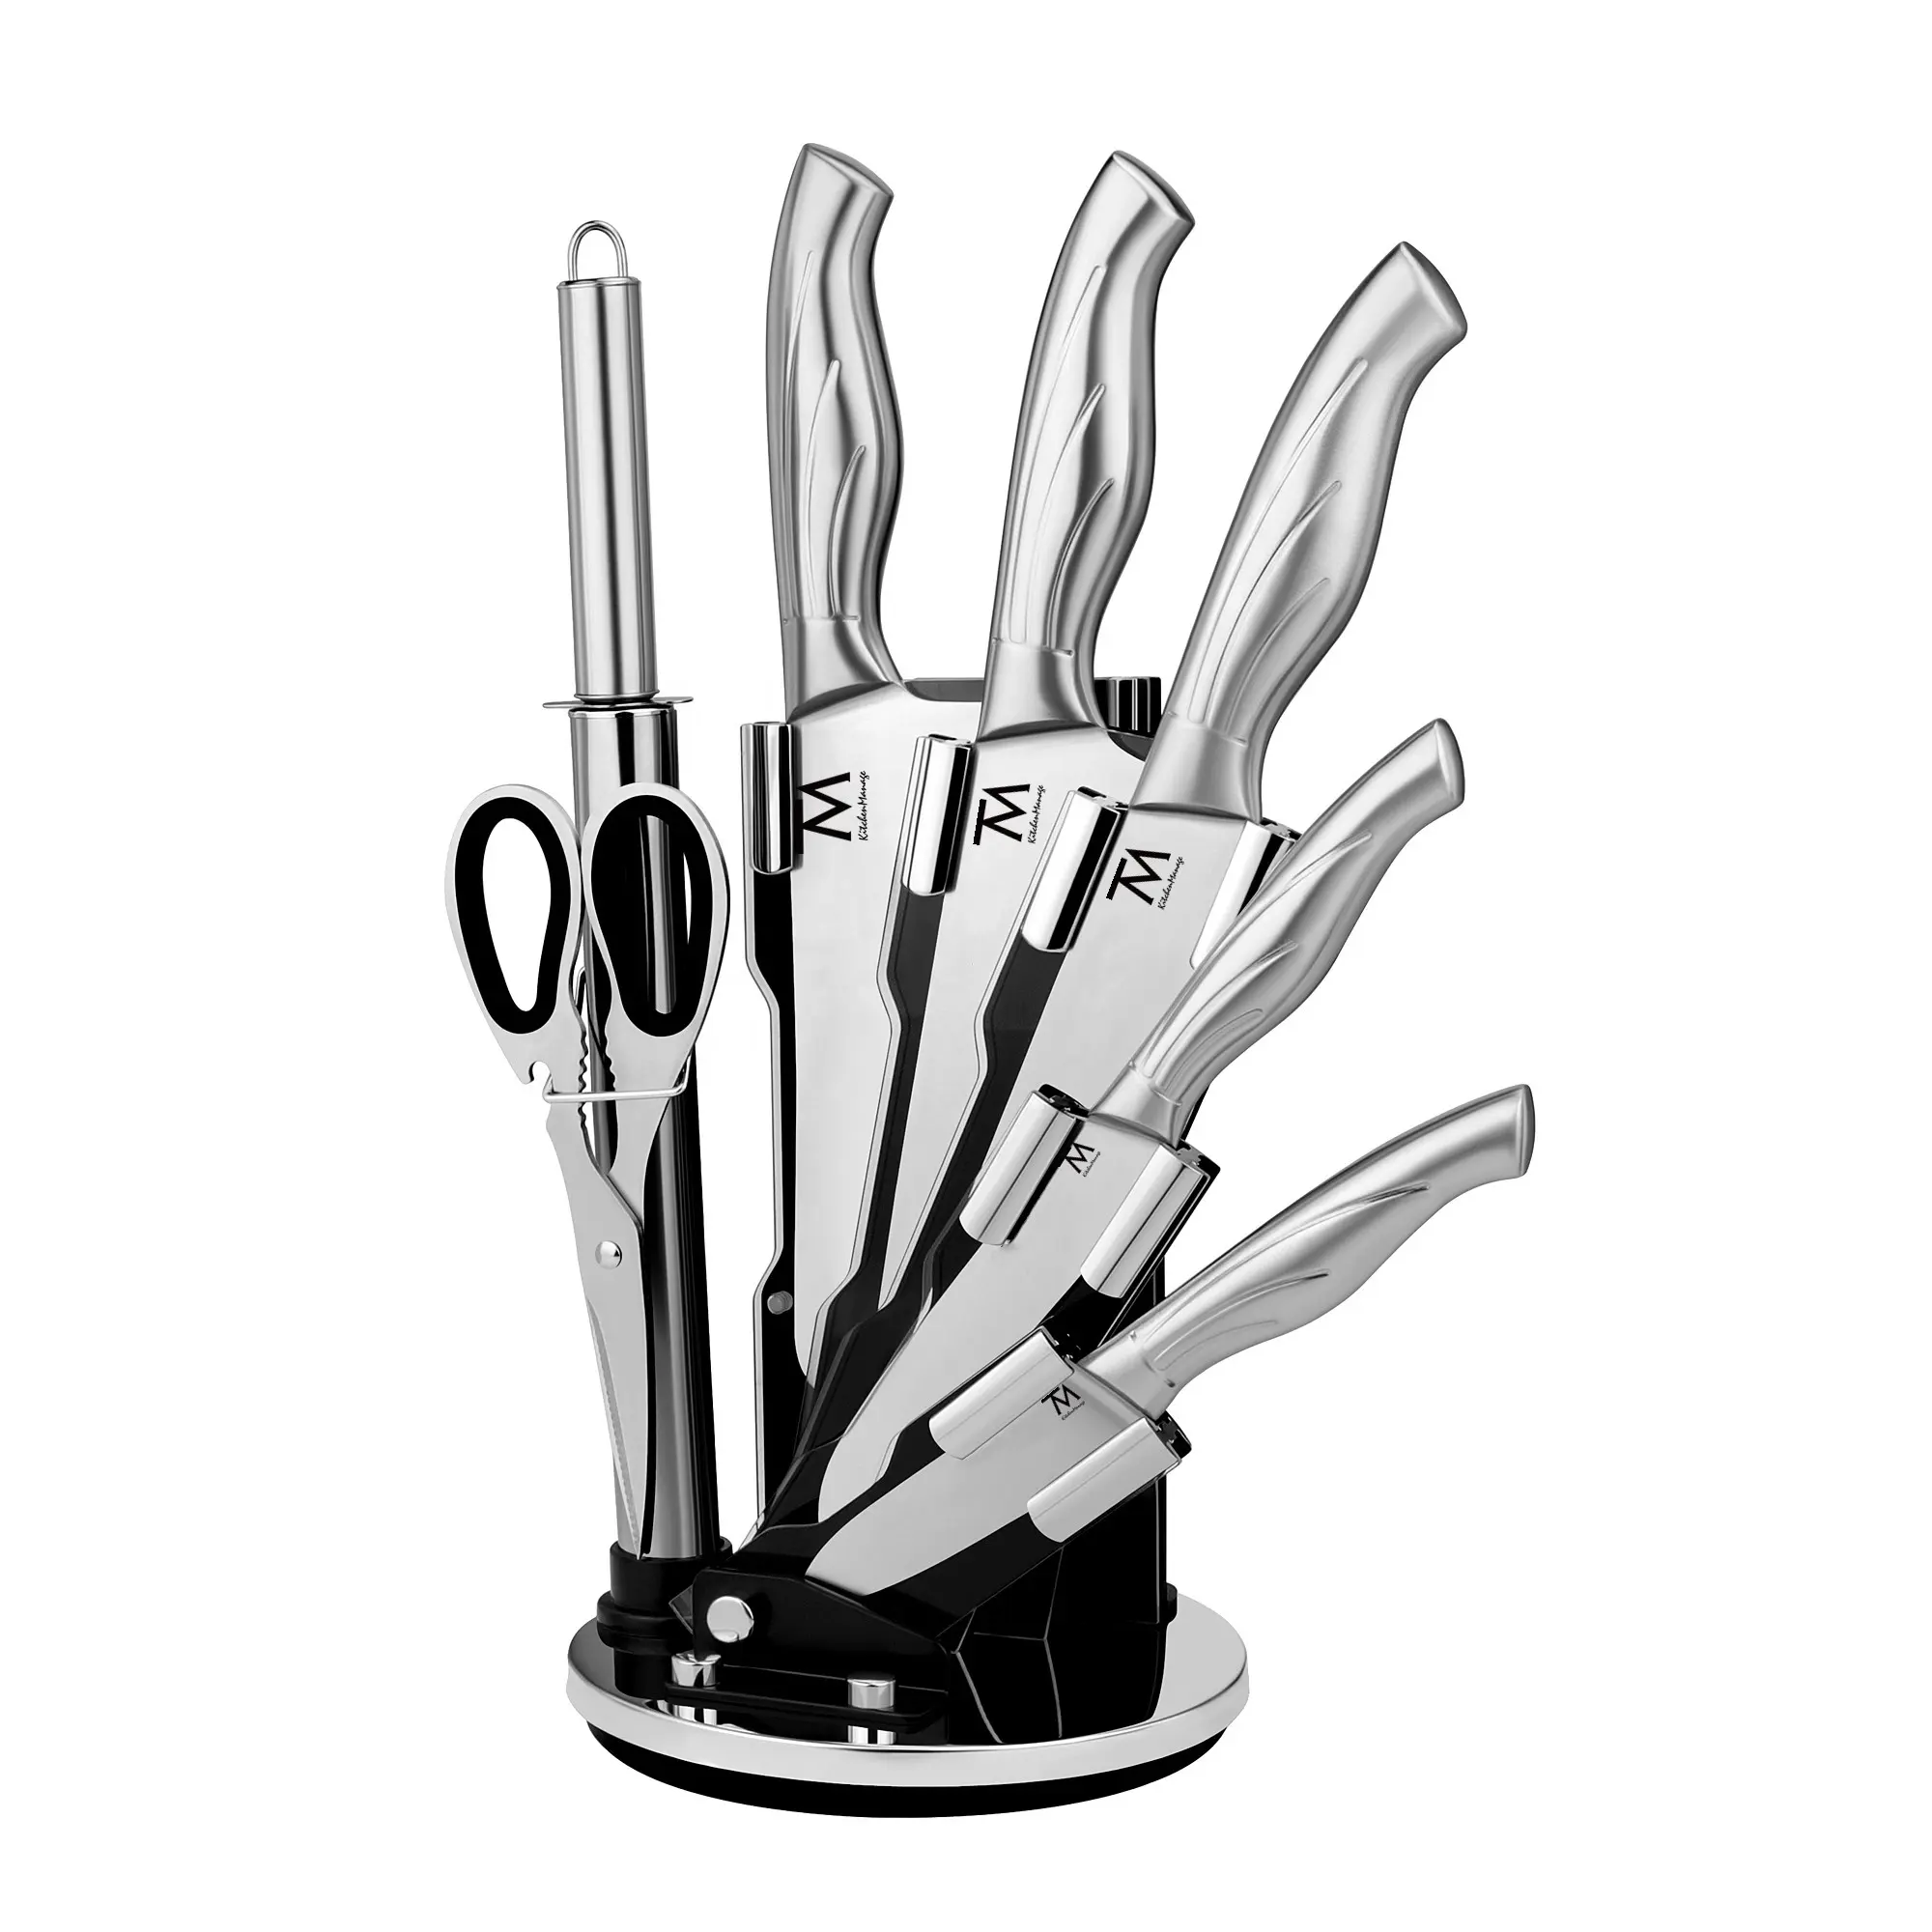 Messer topluluk Couteau Cuchillo paslanmaz çelik profesyonel özel 8 adet içi boş kolu mutfak bıçak blok seti kalemtıraş ile